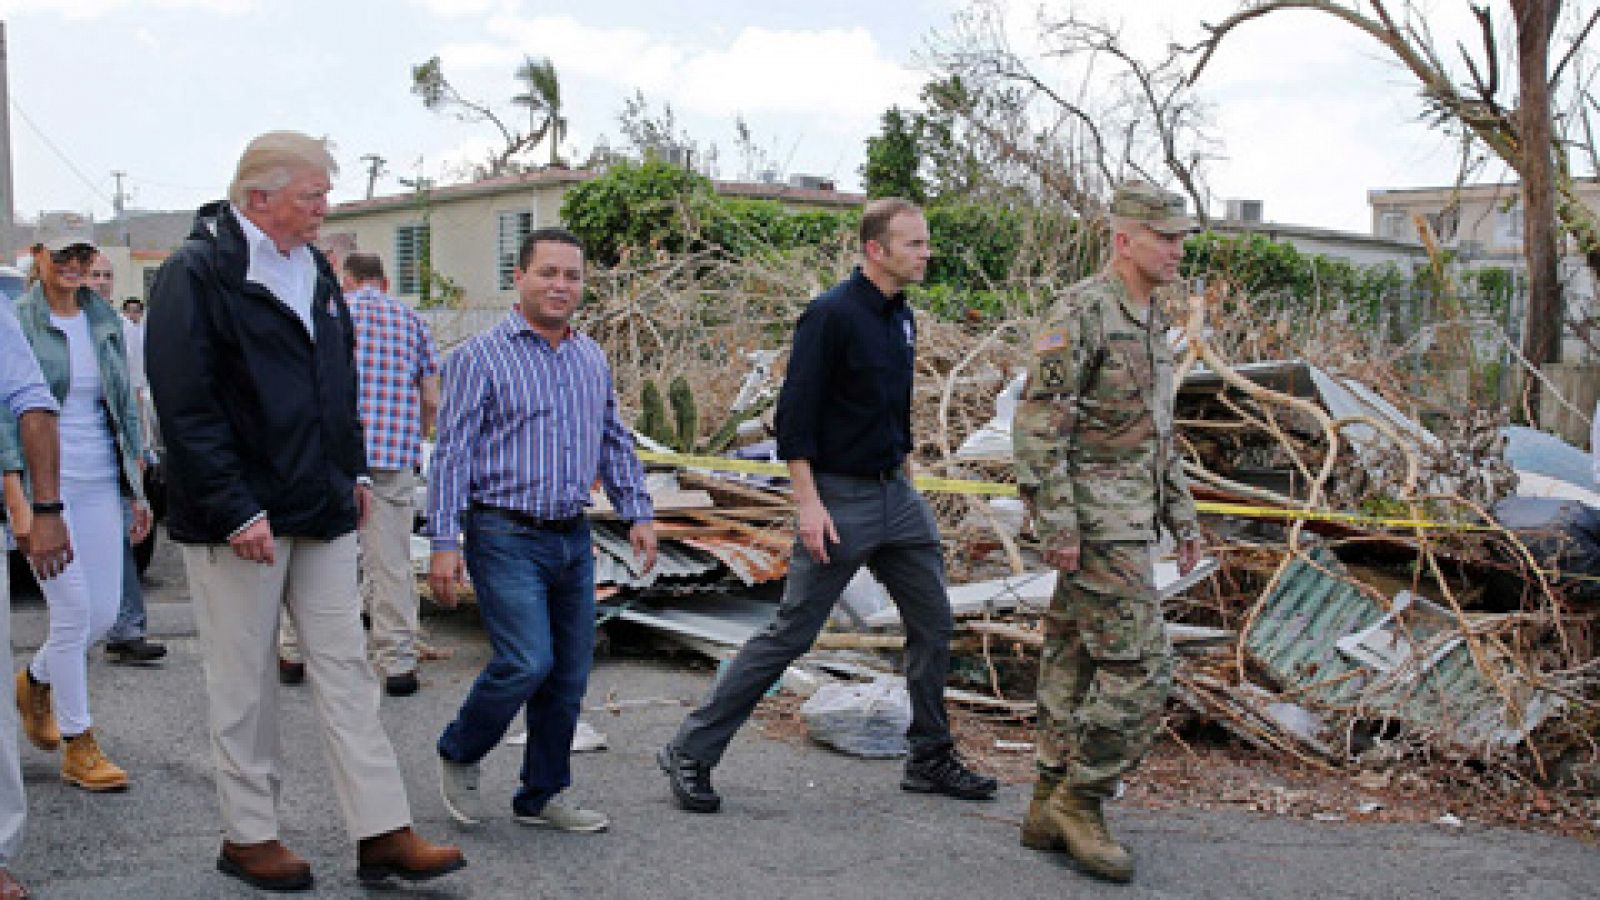 Trump dice que la emergencia en Puerto Rico "no es una catástrofe real" como fue el Katrina